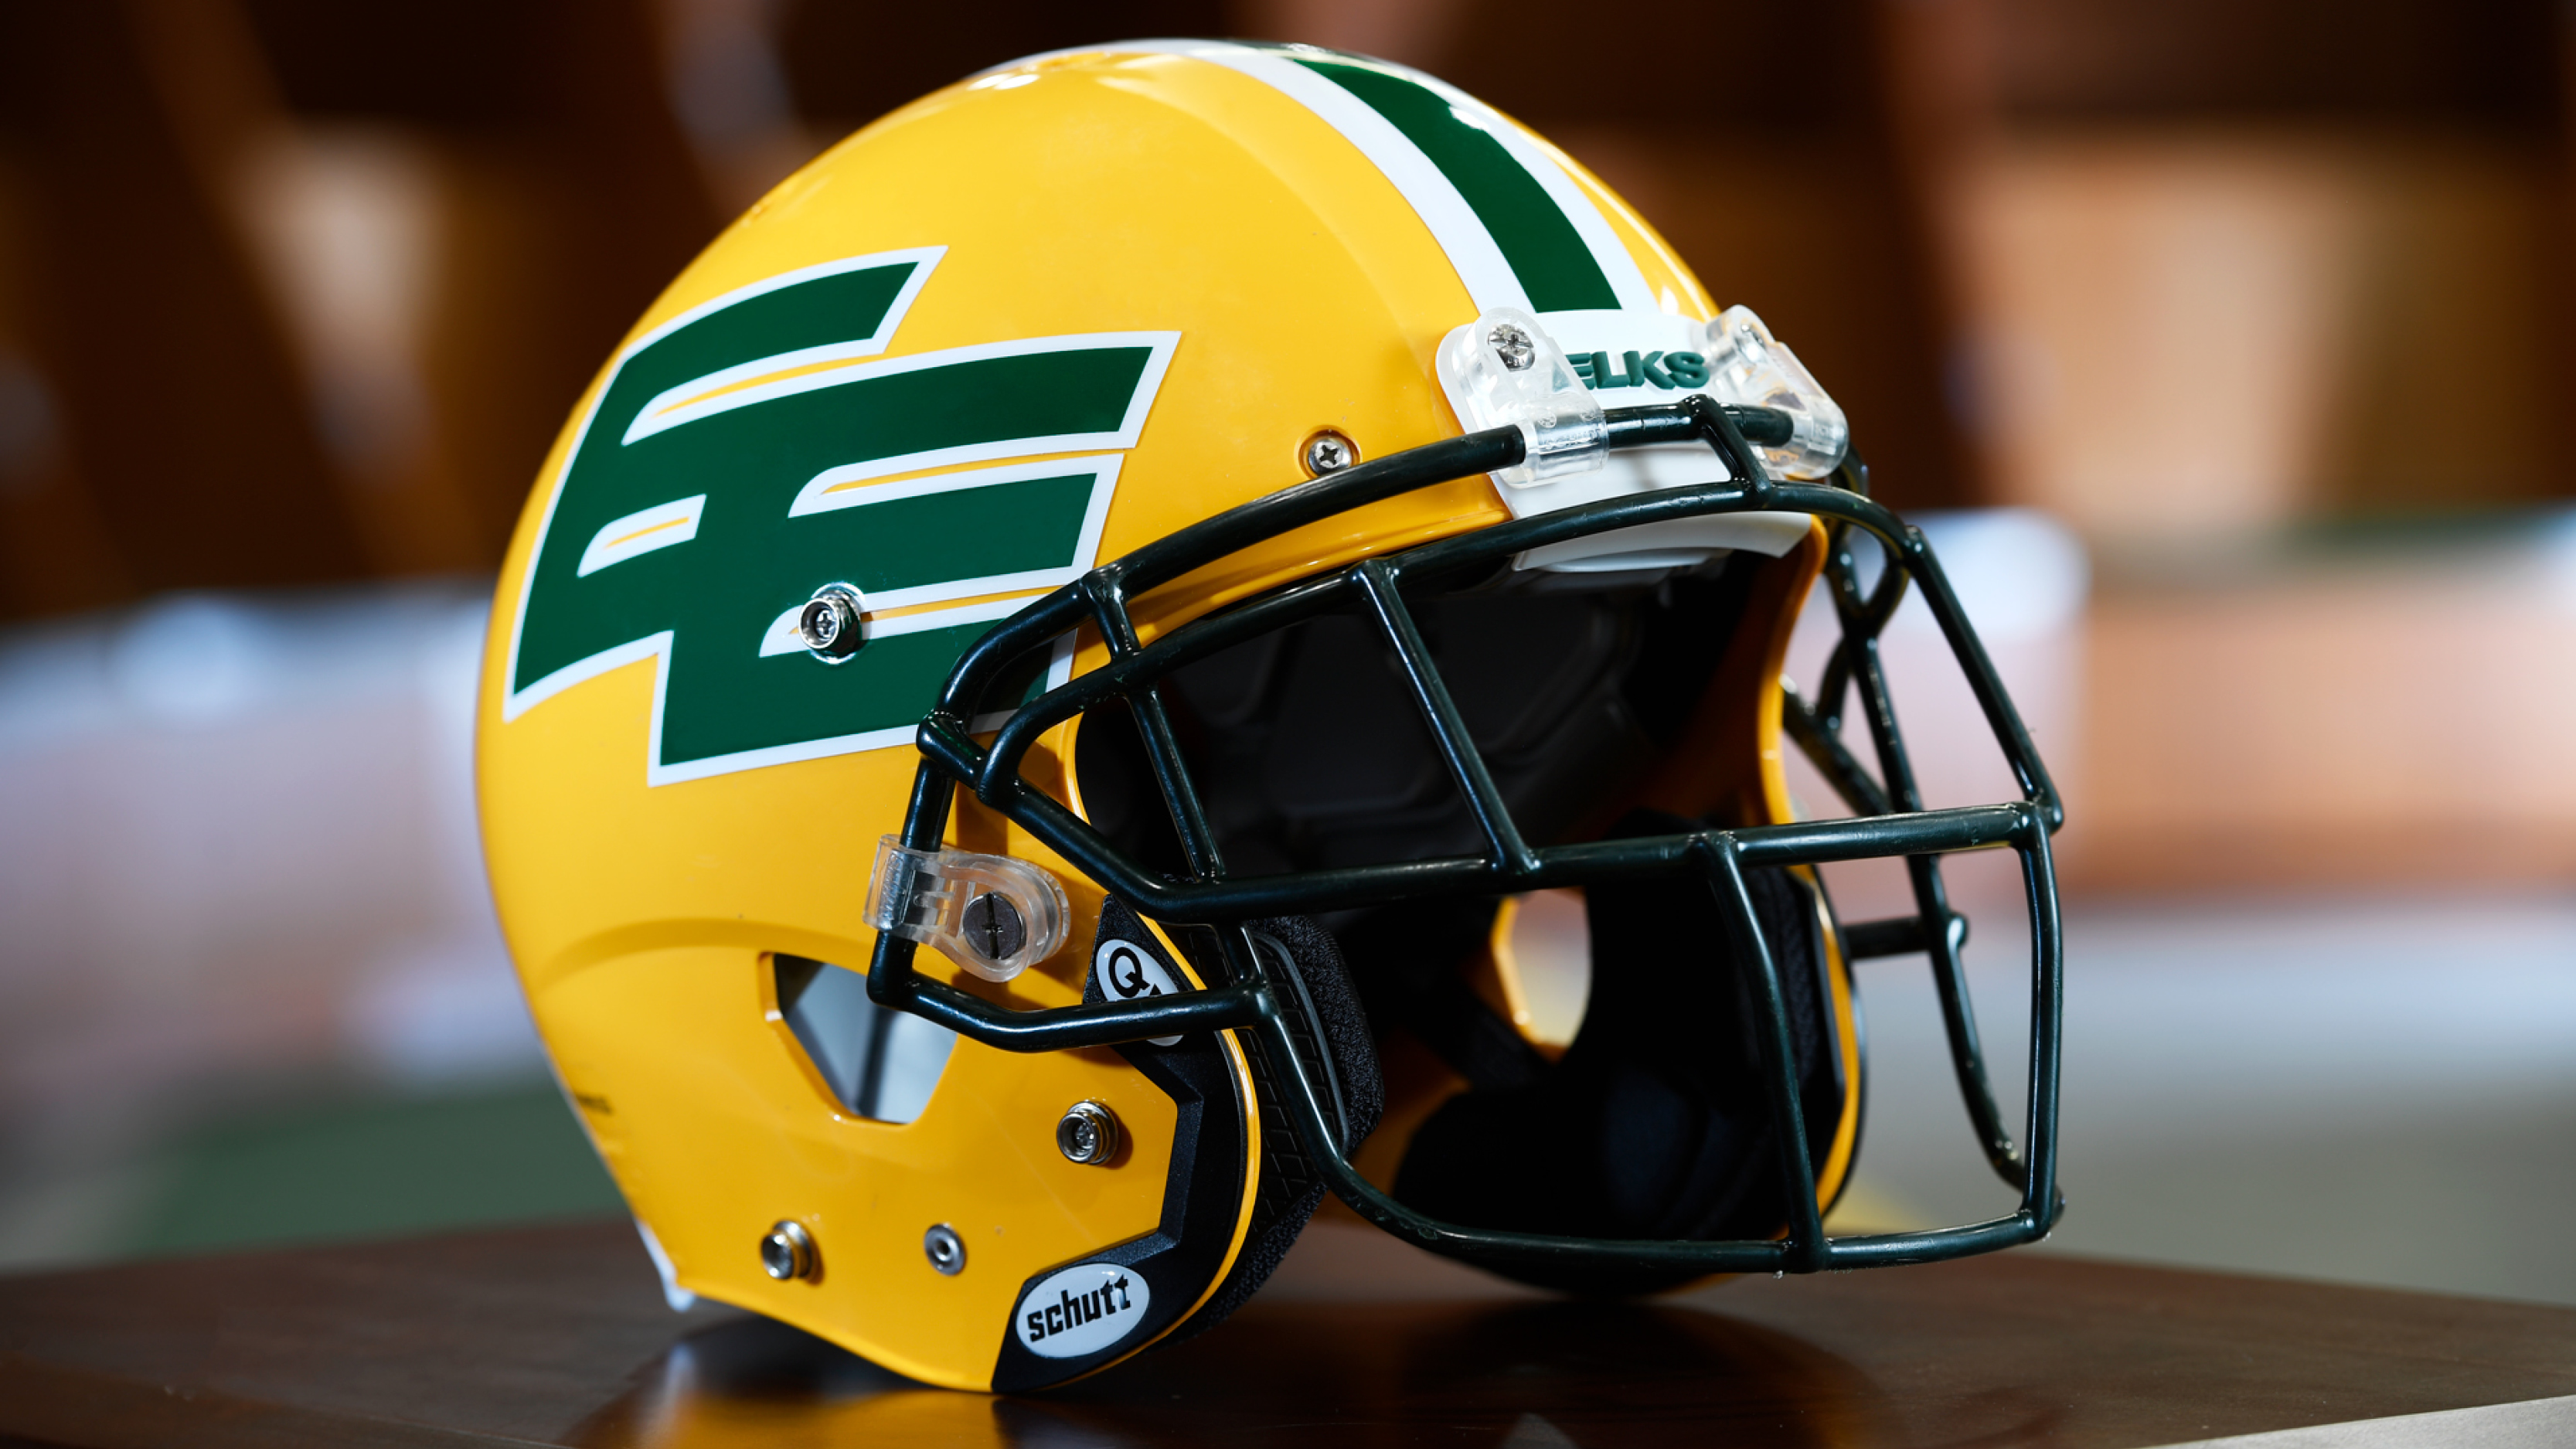 Edmonton CFL franchise changes name to Elks - ESPN